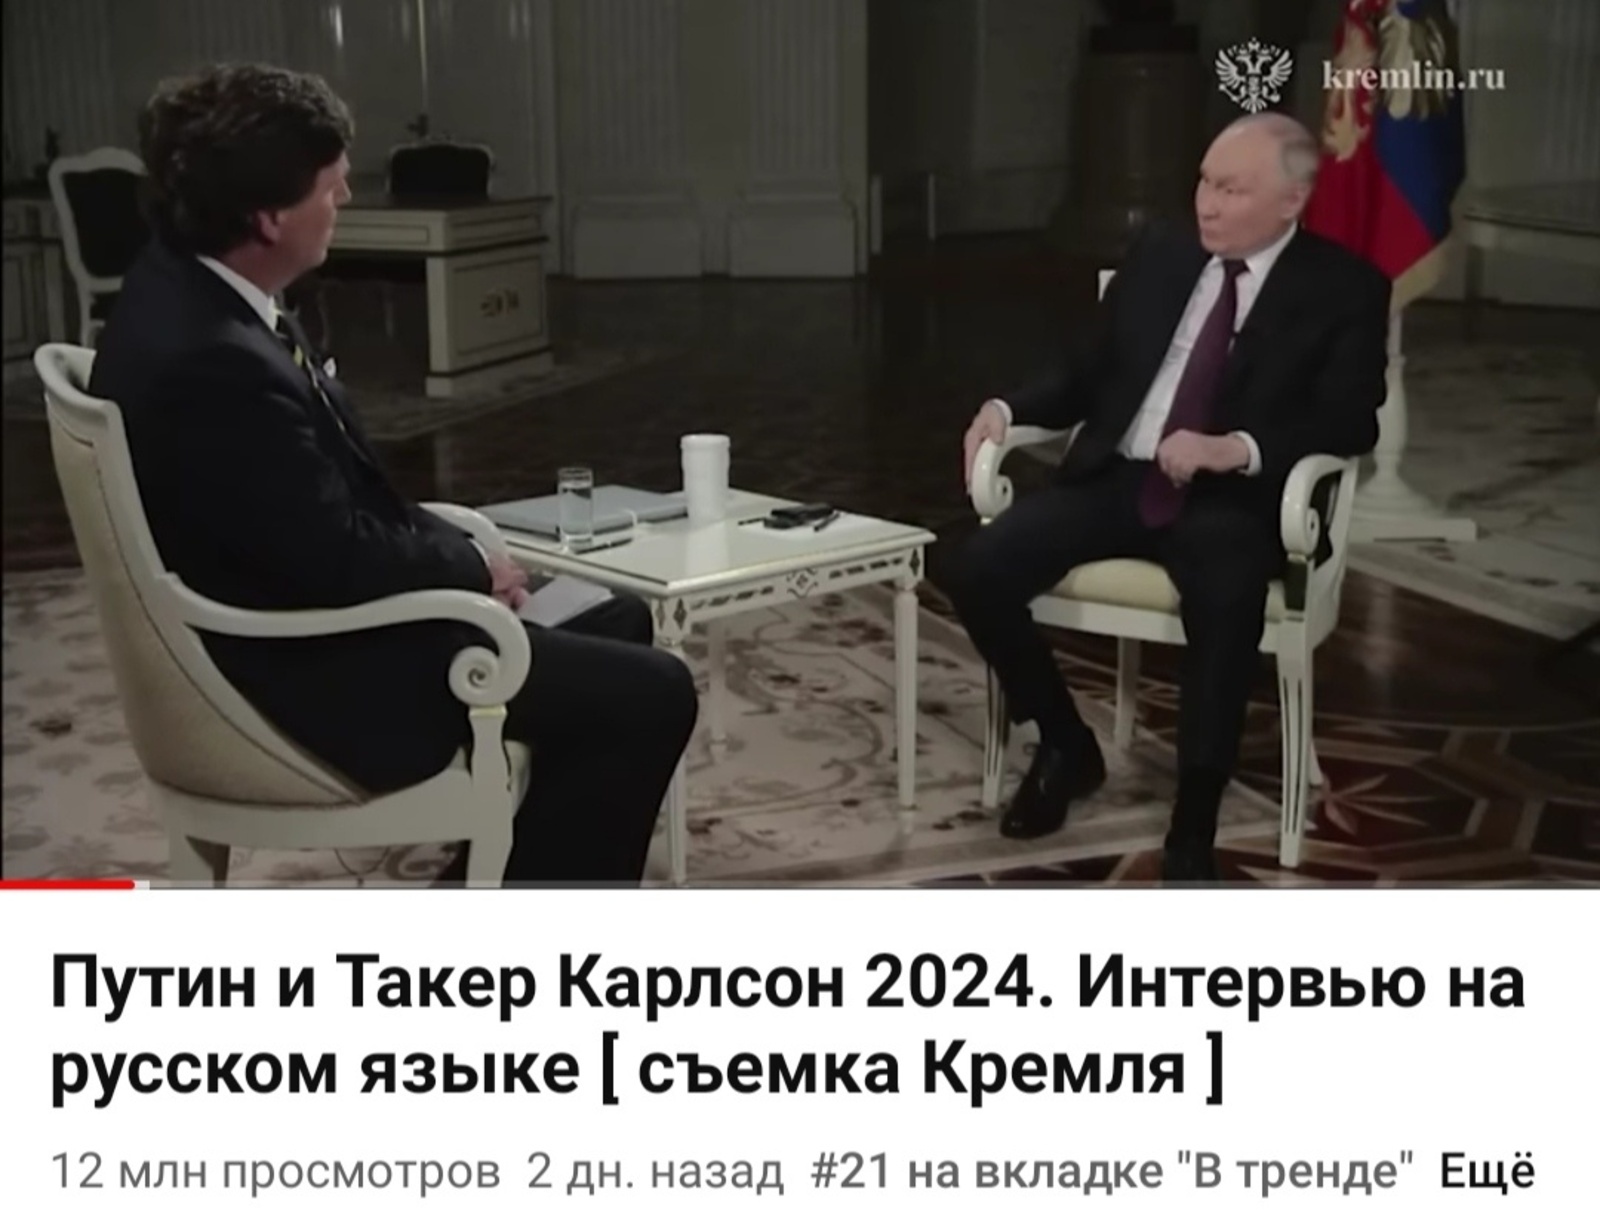 Просмотры интервью Путина оценили в миллиард